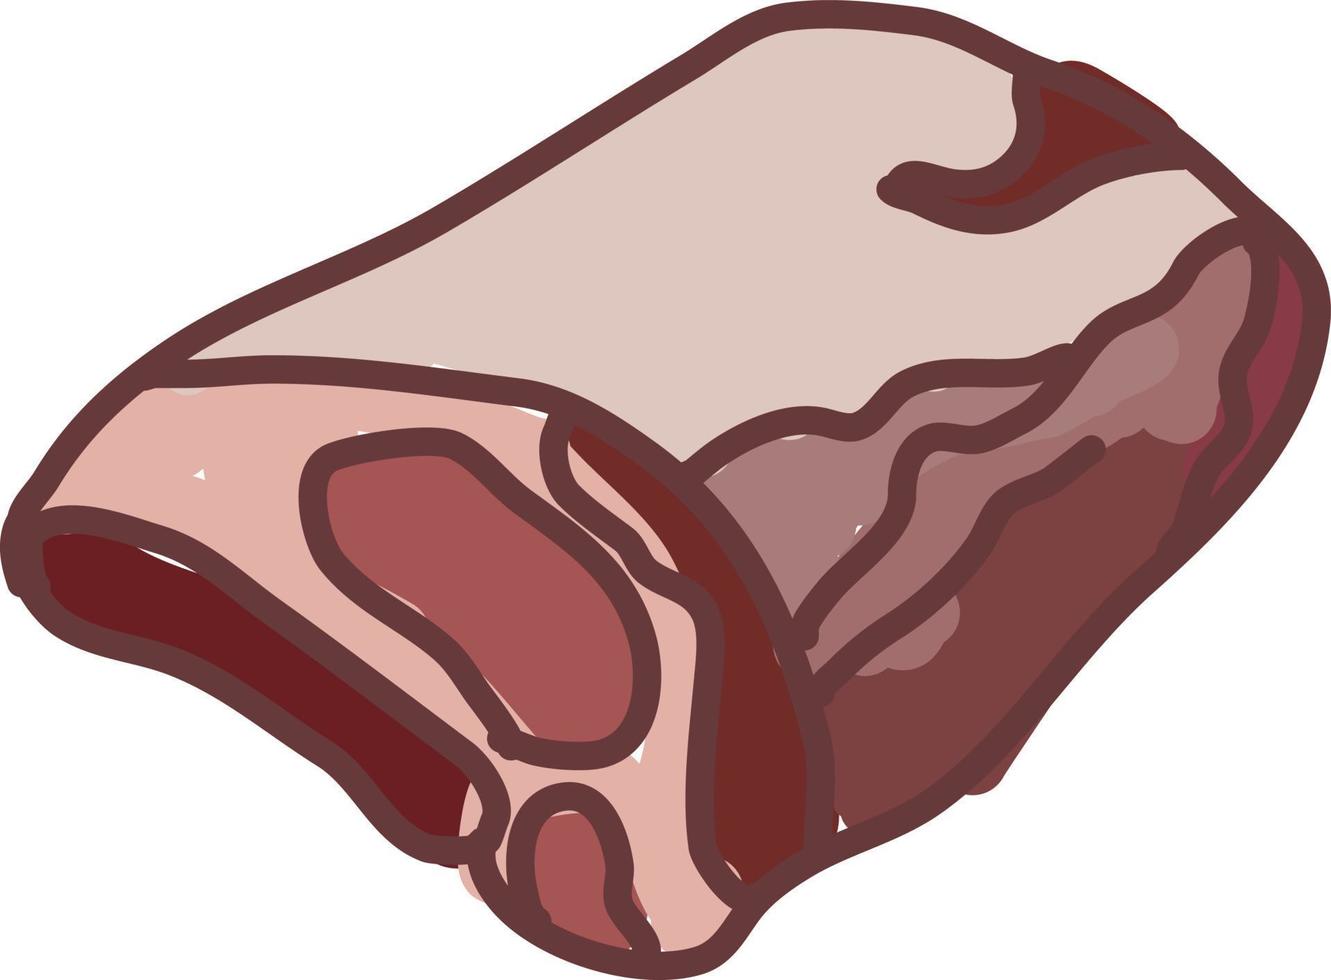 viande rôtie, illustration, vecteur sur fond blanc.